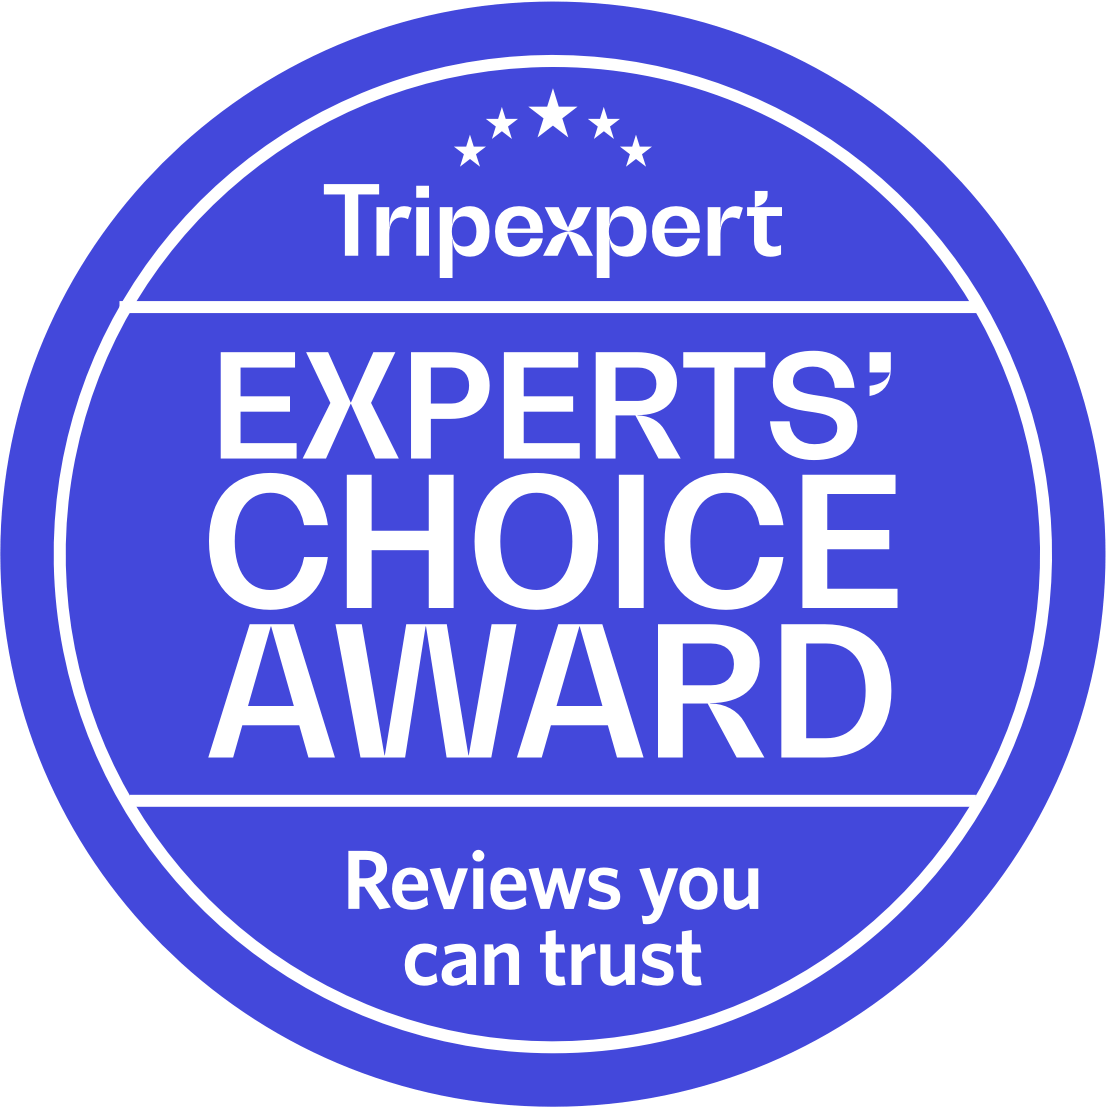 Tripexpert Experts' Choice Award